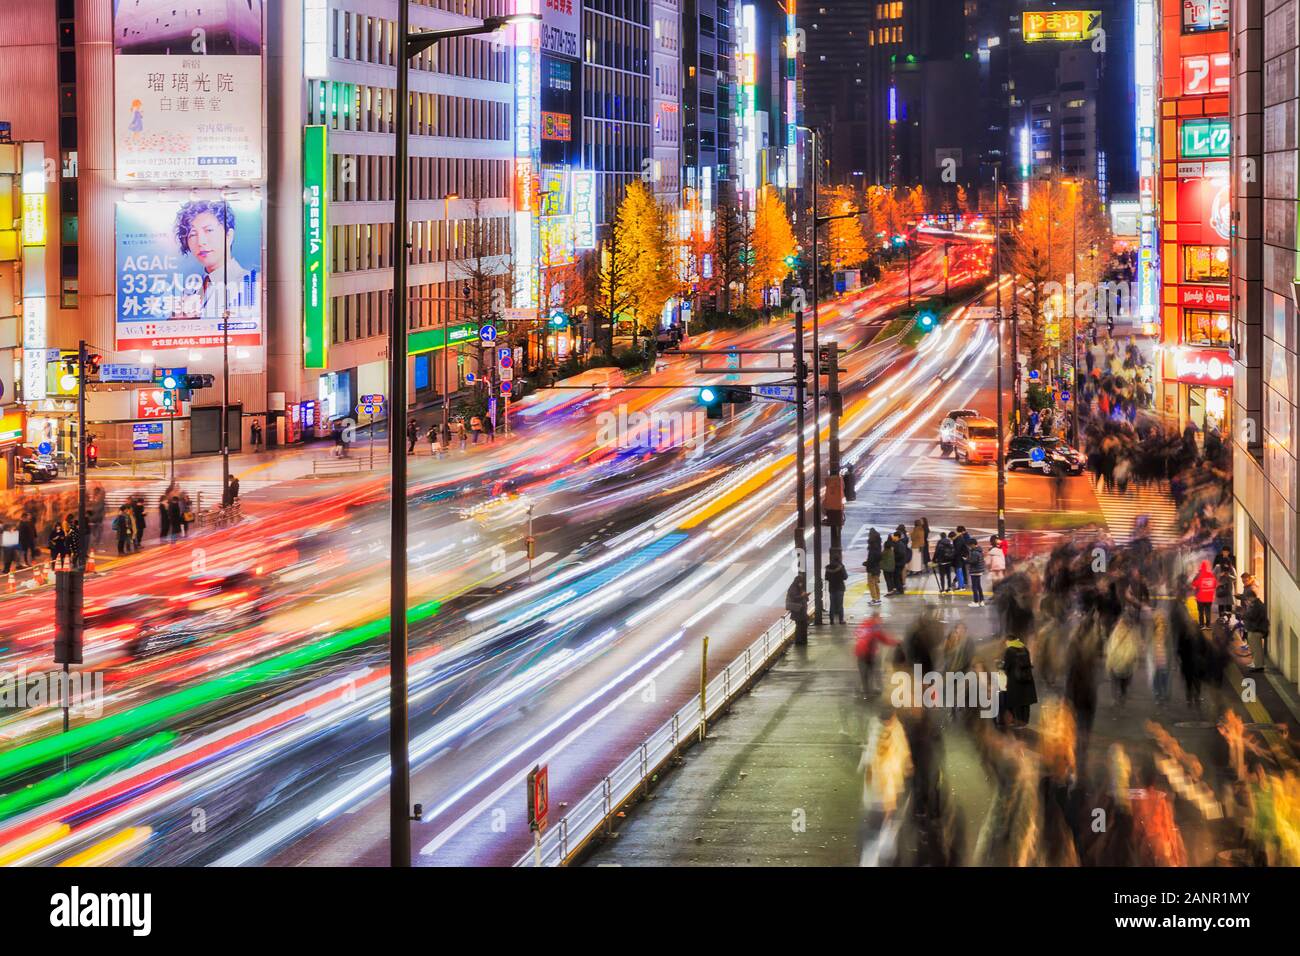 Die bevölkerungsdichte der Megapolis Tokyo City in Japan um Shinjuku-Shibuya Geschäftsviertel in der Nacht mit hellen Illuminationen und Menschenmassen cro Stockfoto